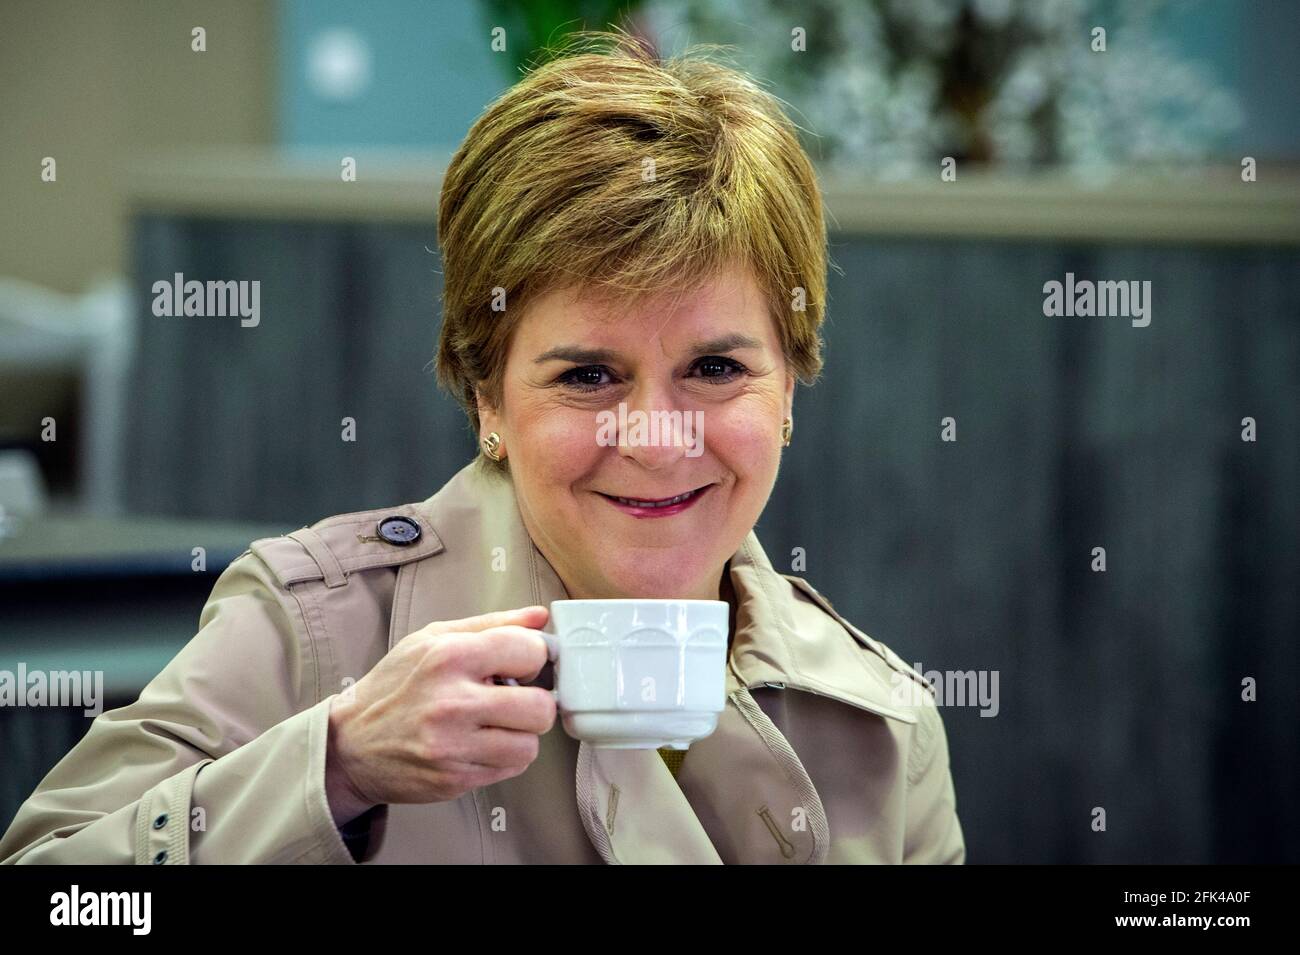 Die erste Ministerin Schottlands und Vorsitzende der Scottish National Party (SNP), Nicola Sturgeon, besucht das Rouken Glen Garden Center in Giffnock, während sie sich für die schottischen Parlamentswahlen einsetzt. Bilddatum: Mittwoch, 28. April 2021. Stockfoto